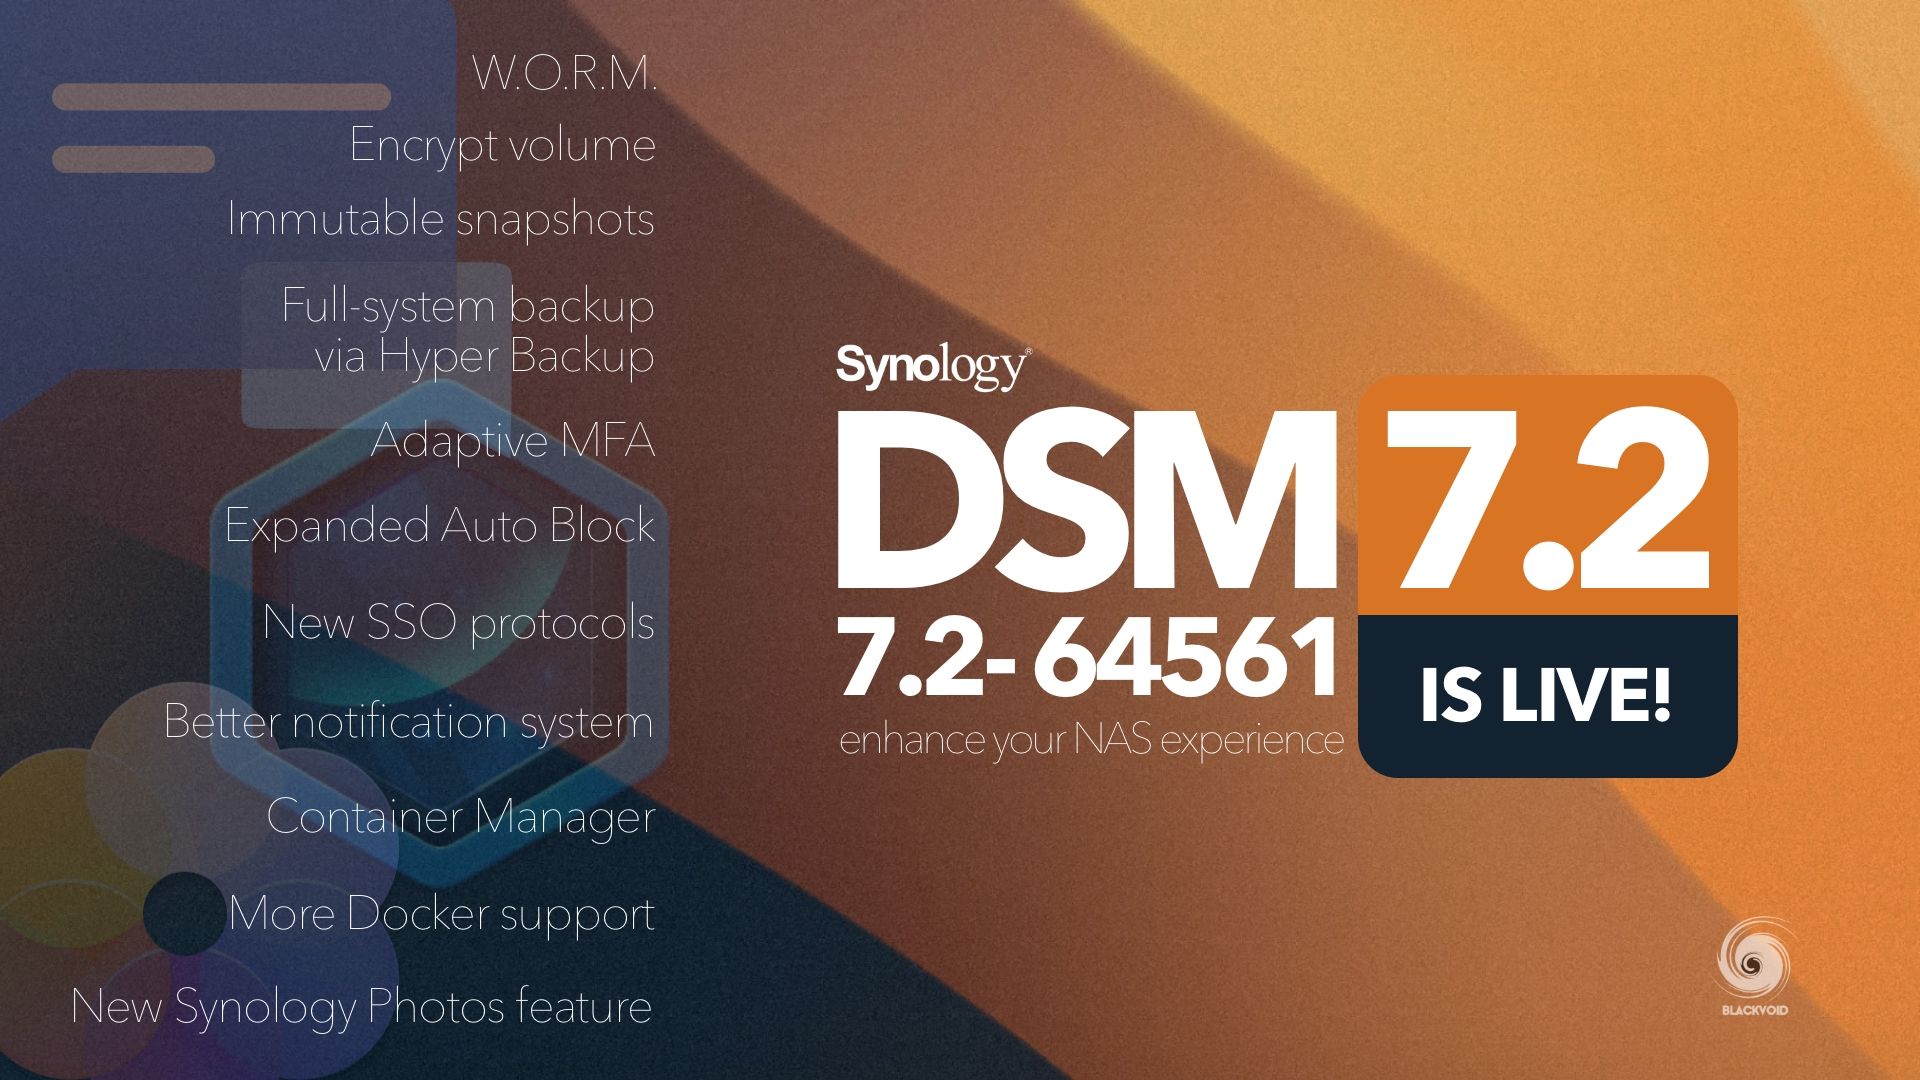 DSM 7.2-64561